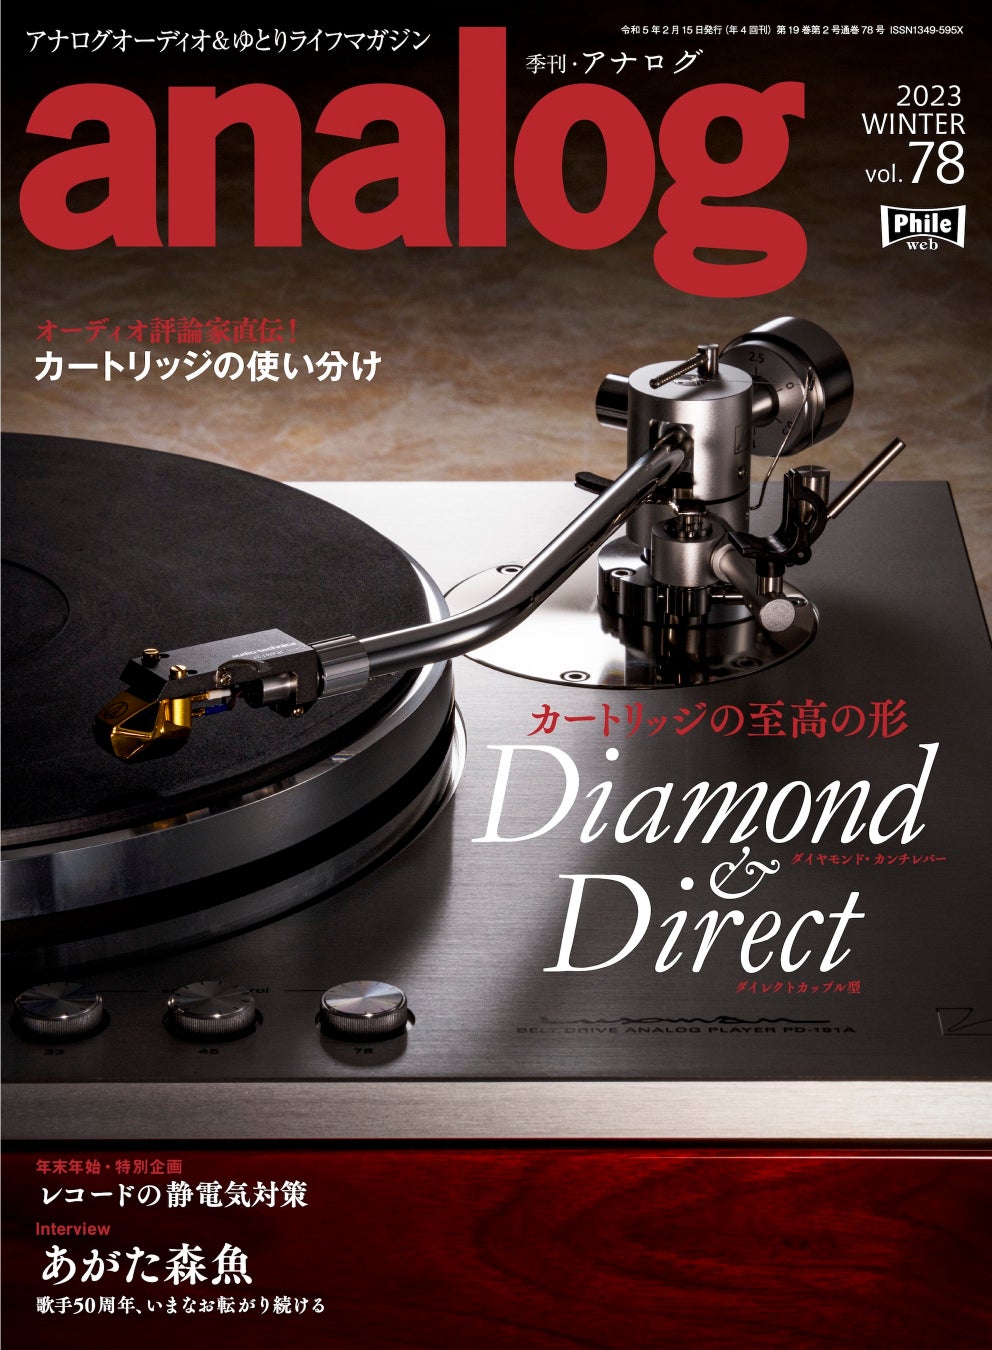 国内唯一のアナログオーディオ専門誌「季刊・アナログ」、“注目の新製品”と“レコード愛”をテーマに盛りだくさんの内容でお届けする最新号 vol.78 は、本日12/28(水)発売です。